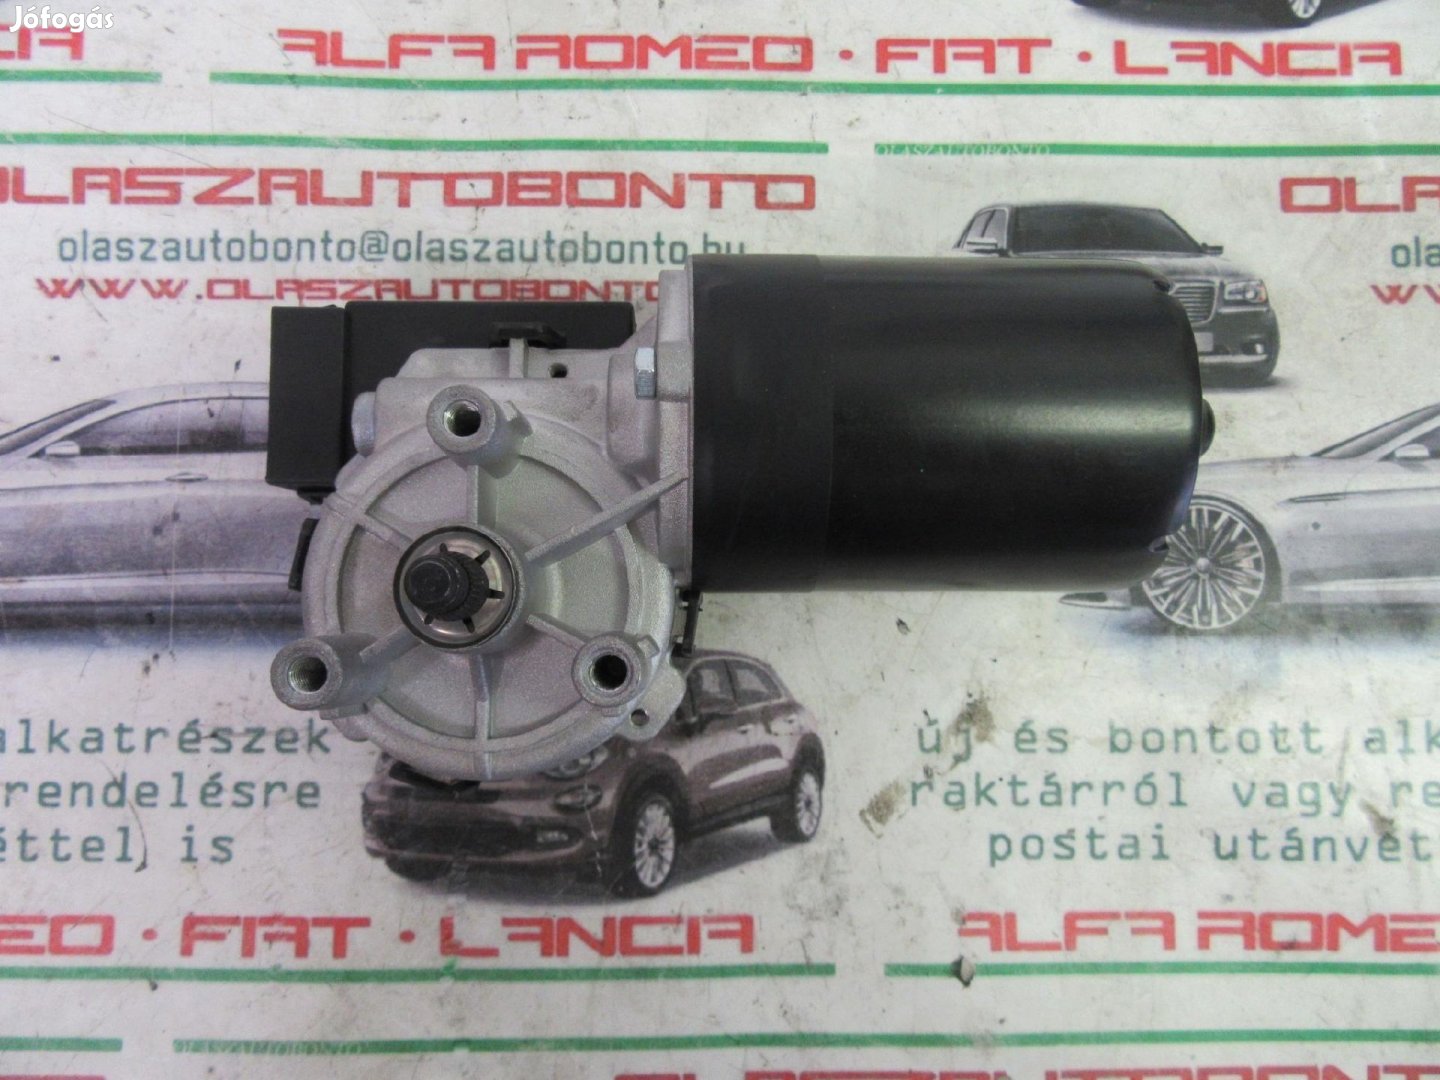 Alfa Romeo 156 utángyártott új, első abalaktörlő motor